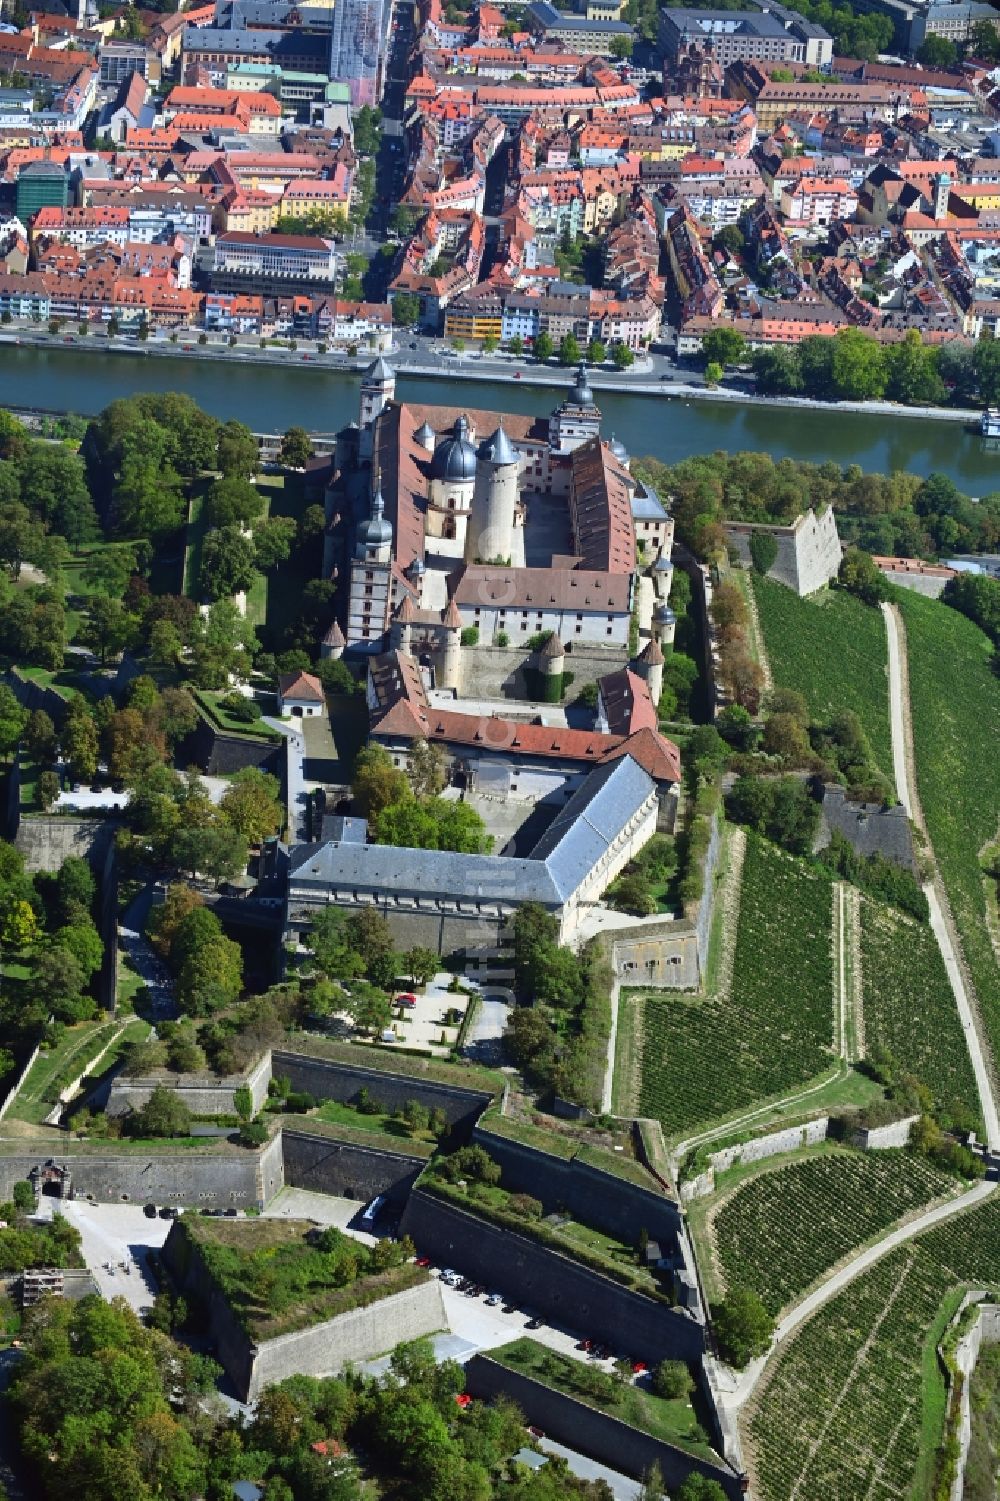 Würzburg von oben - Festung Marienberg über dem Main in Würzburg im Bundesland Bayern, Deutschland